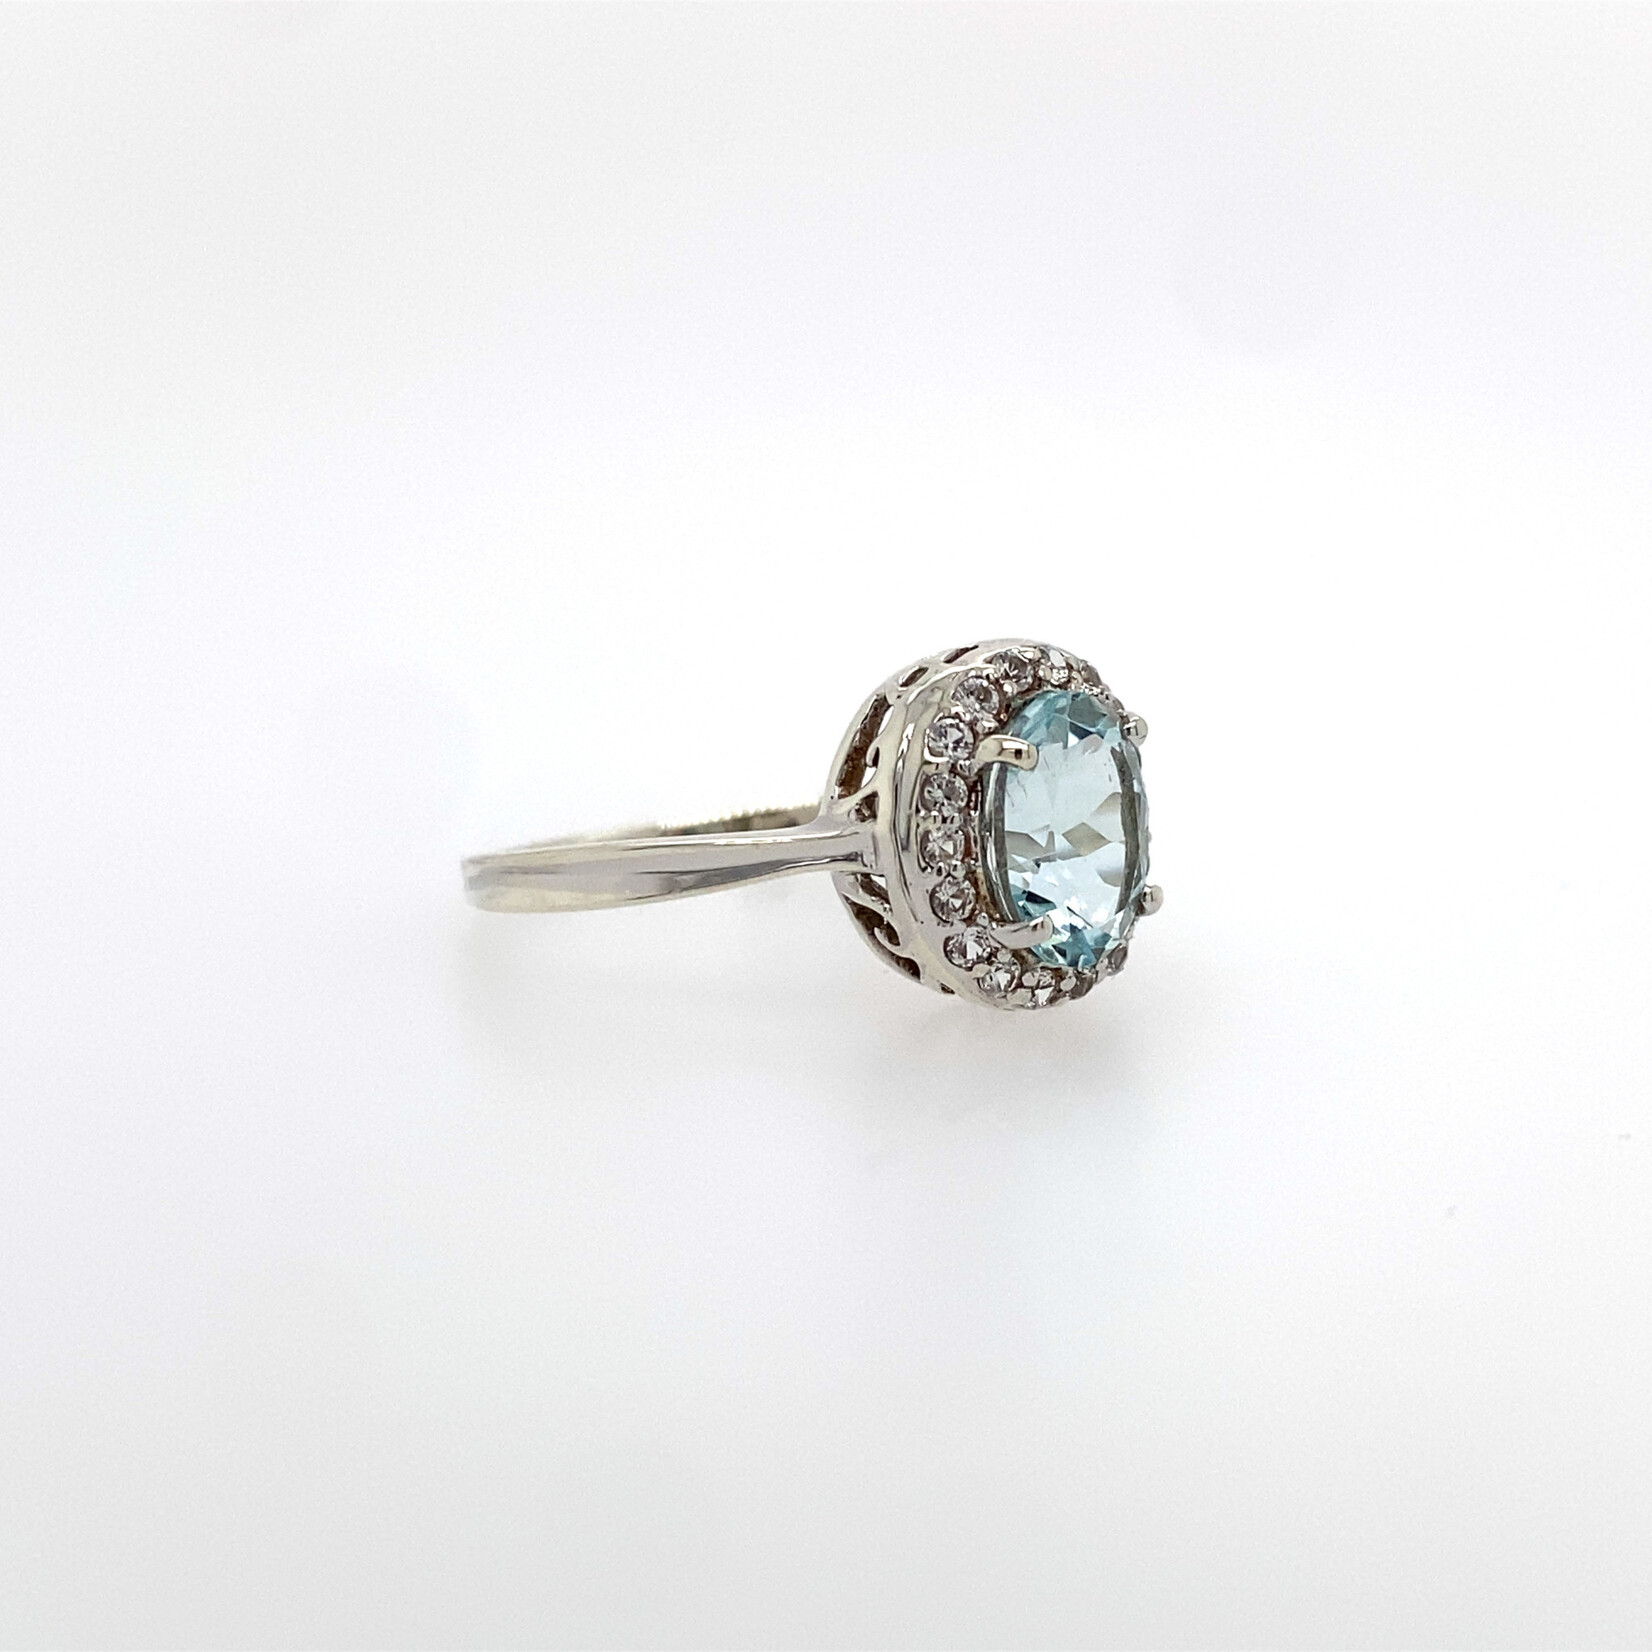 10 Kt W G Ladies Aquamarine/ .22 White Sapphire Ring #7